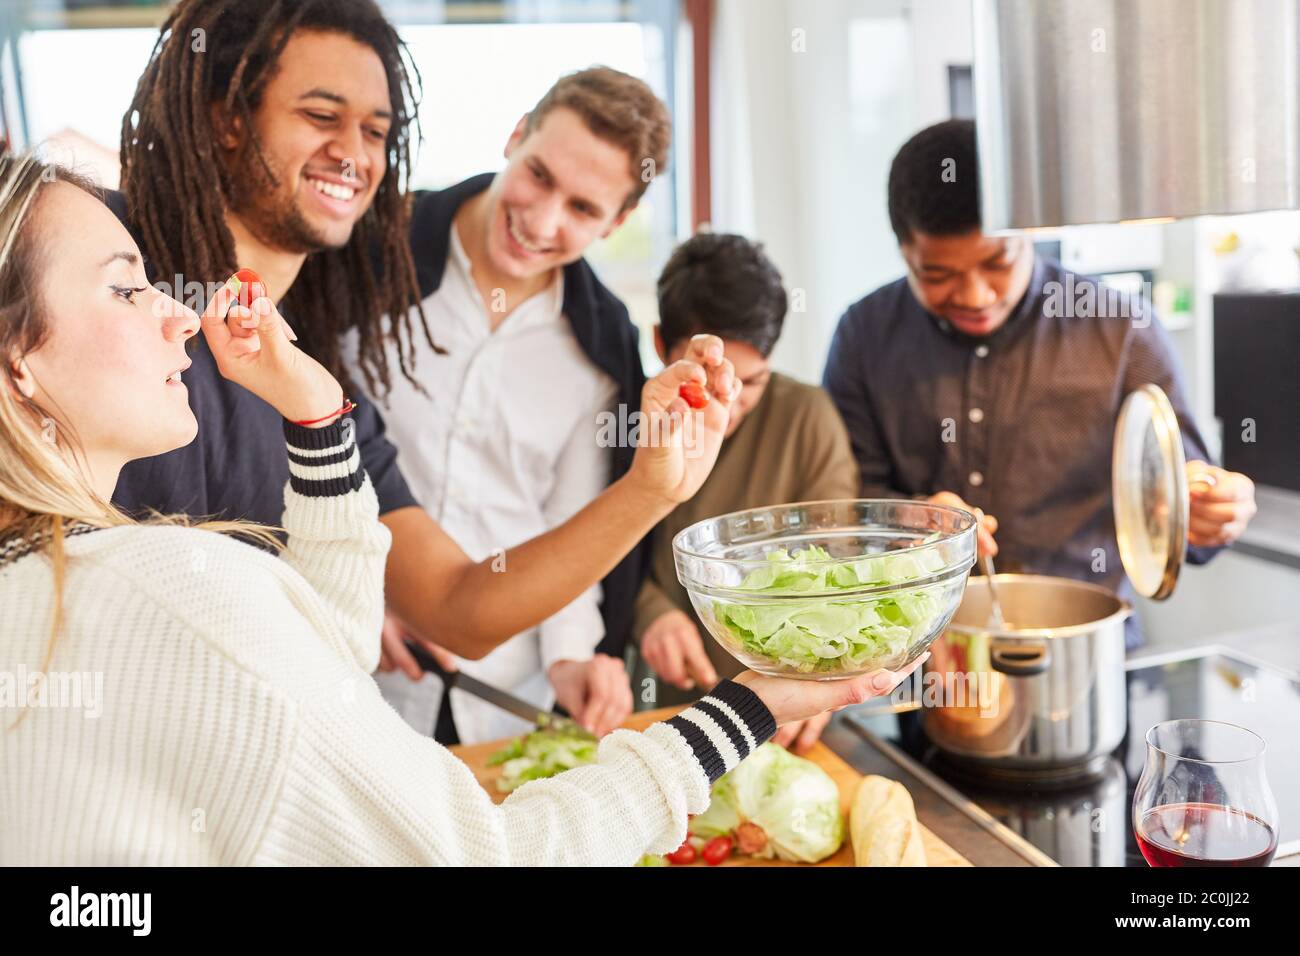 Les élèves qui rient préparent une salade dans une cuisine commune Banque D'Images